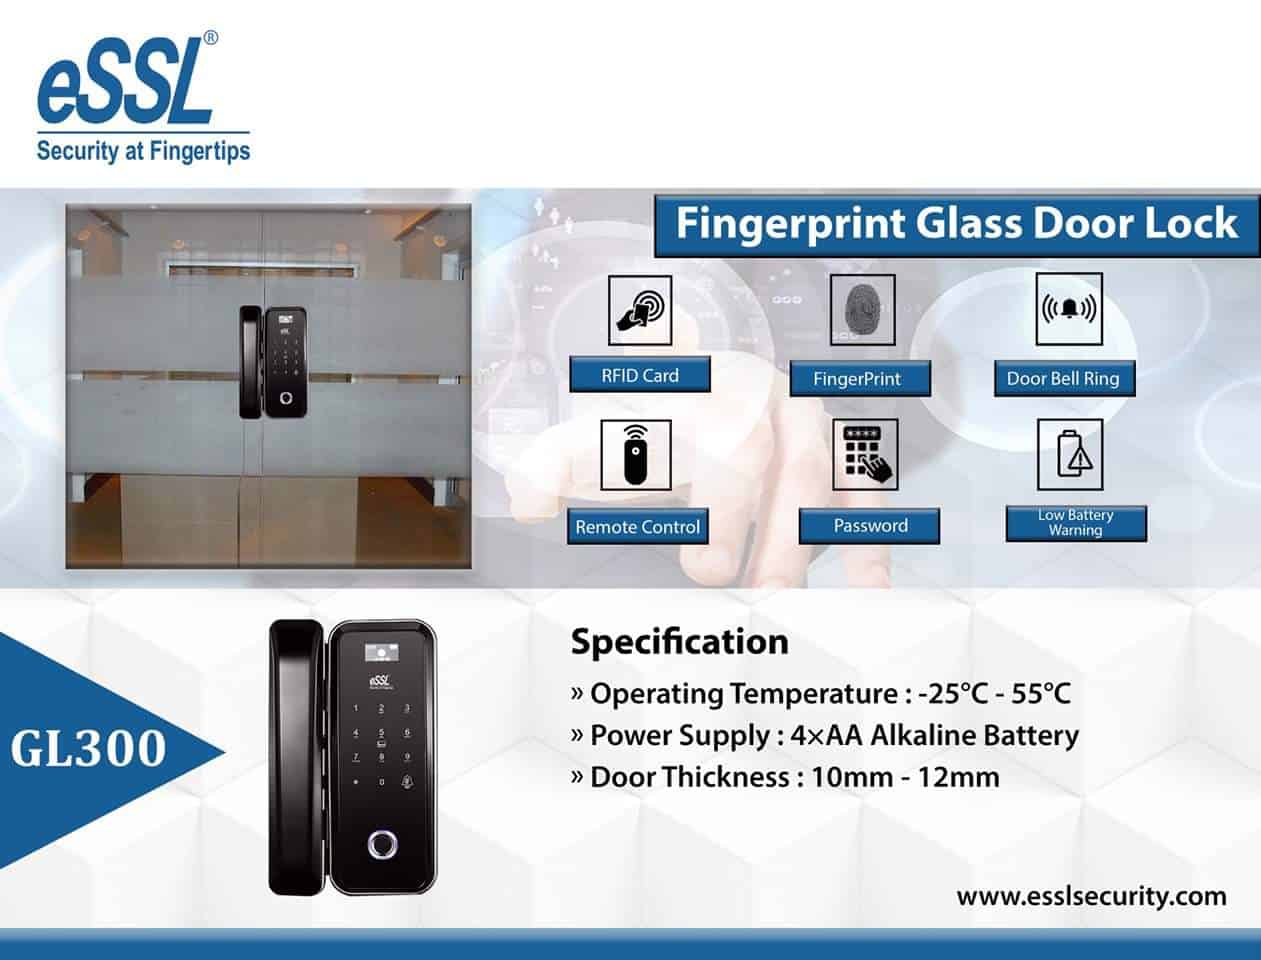 Features eSSL Fingerprint Door Lock System GL300